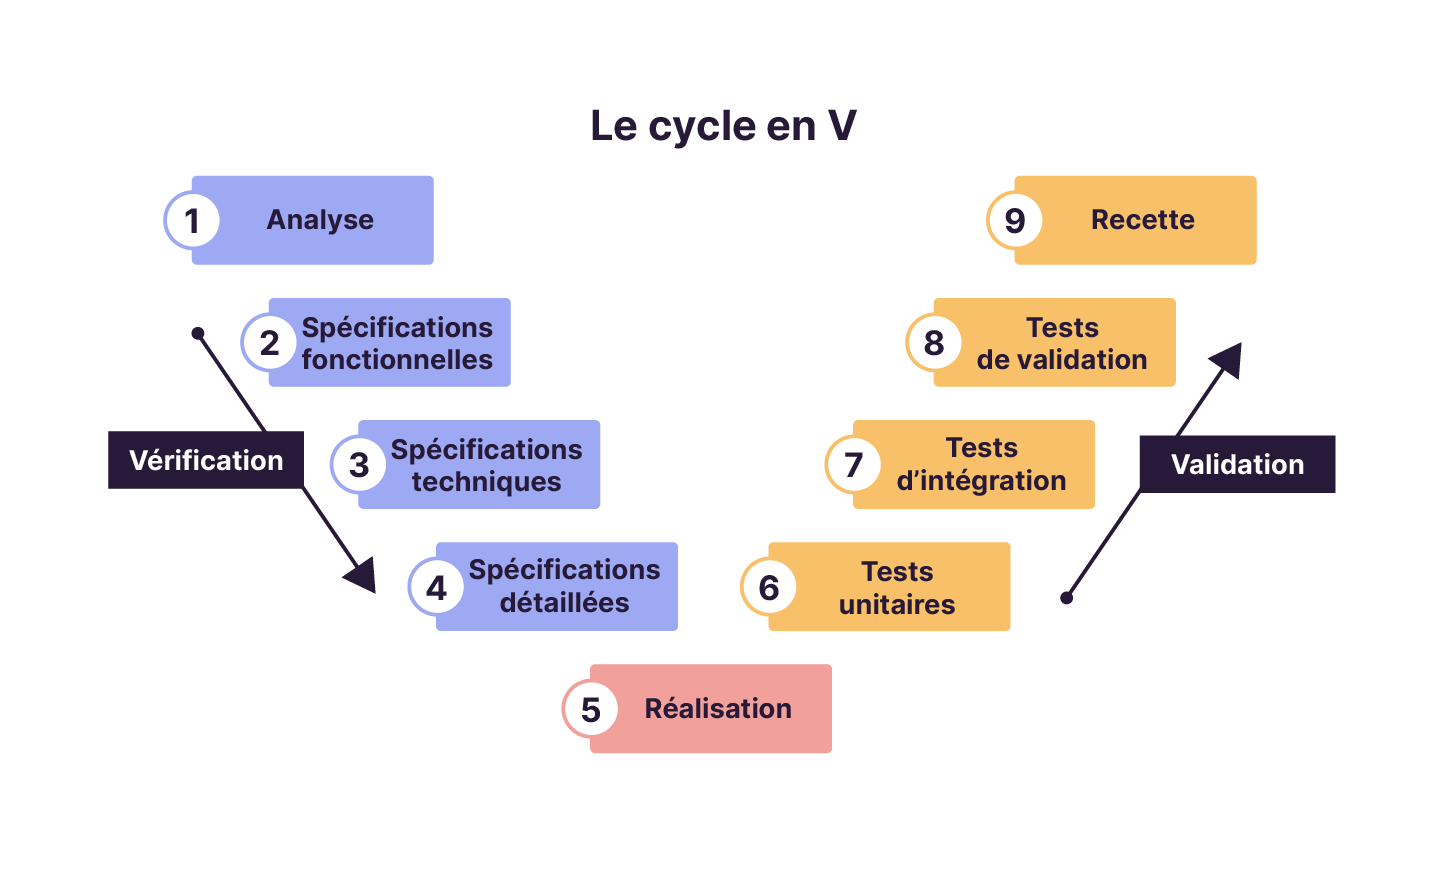 Les 9 étapes du cycle en V composées dans l'ordre, de l'analyse, les spécifications fonctionnelles, techniques et détaillées, la réalisation, les tests unitaires, d'intégration, de validation et la recette.